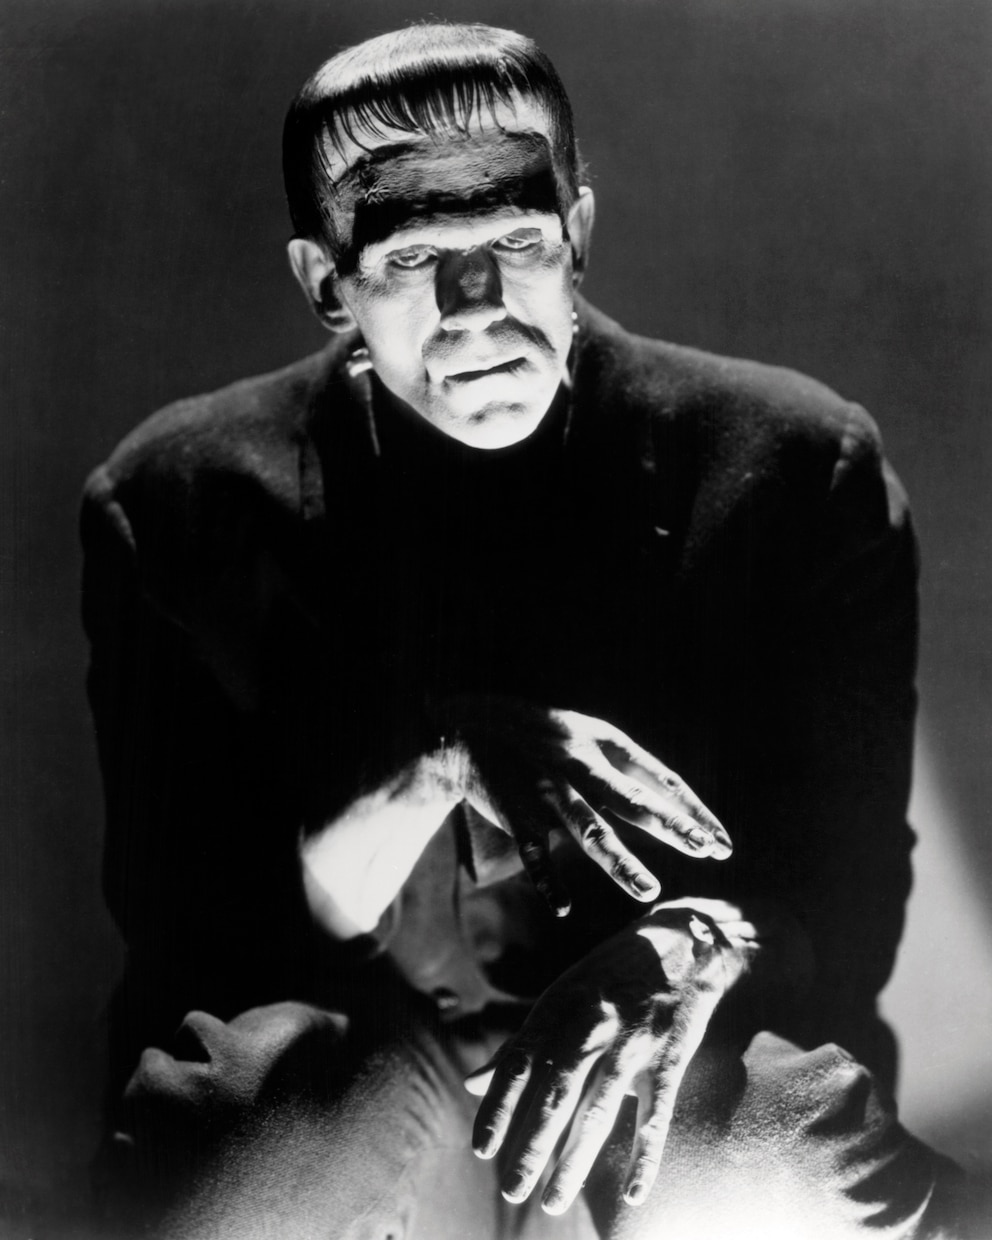  Das Buch von Mary Shelley wurde später mehrfach verfilmt. Unvergessen: Boris Karloff als Monster im Film „Frankenstein“ von James Whale (1931)